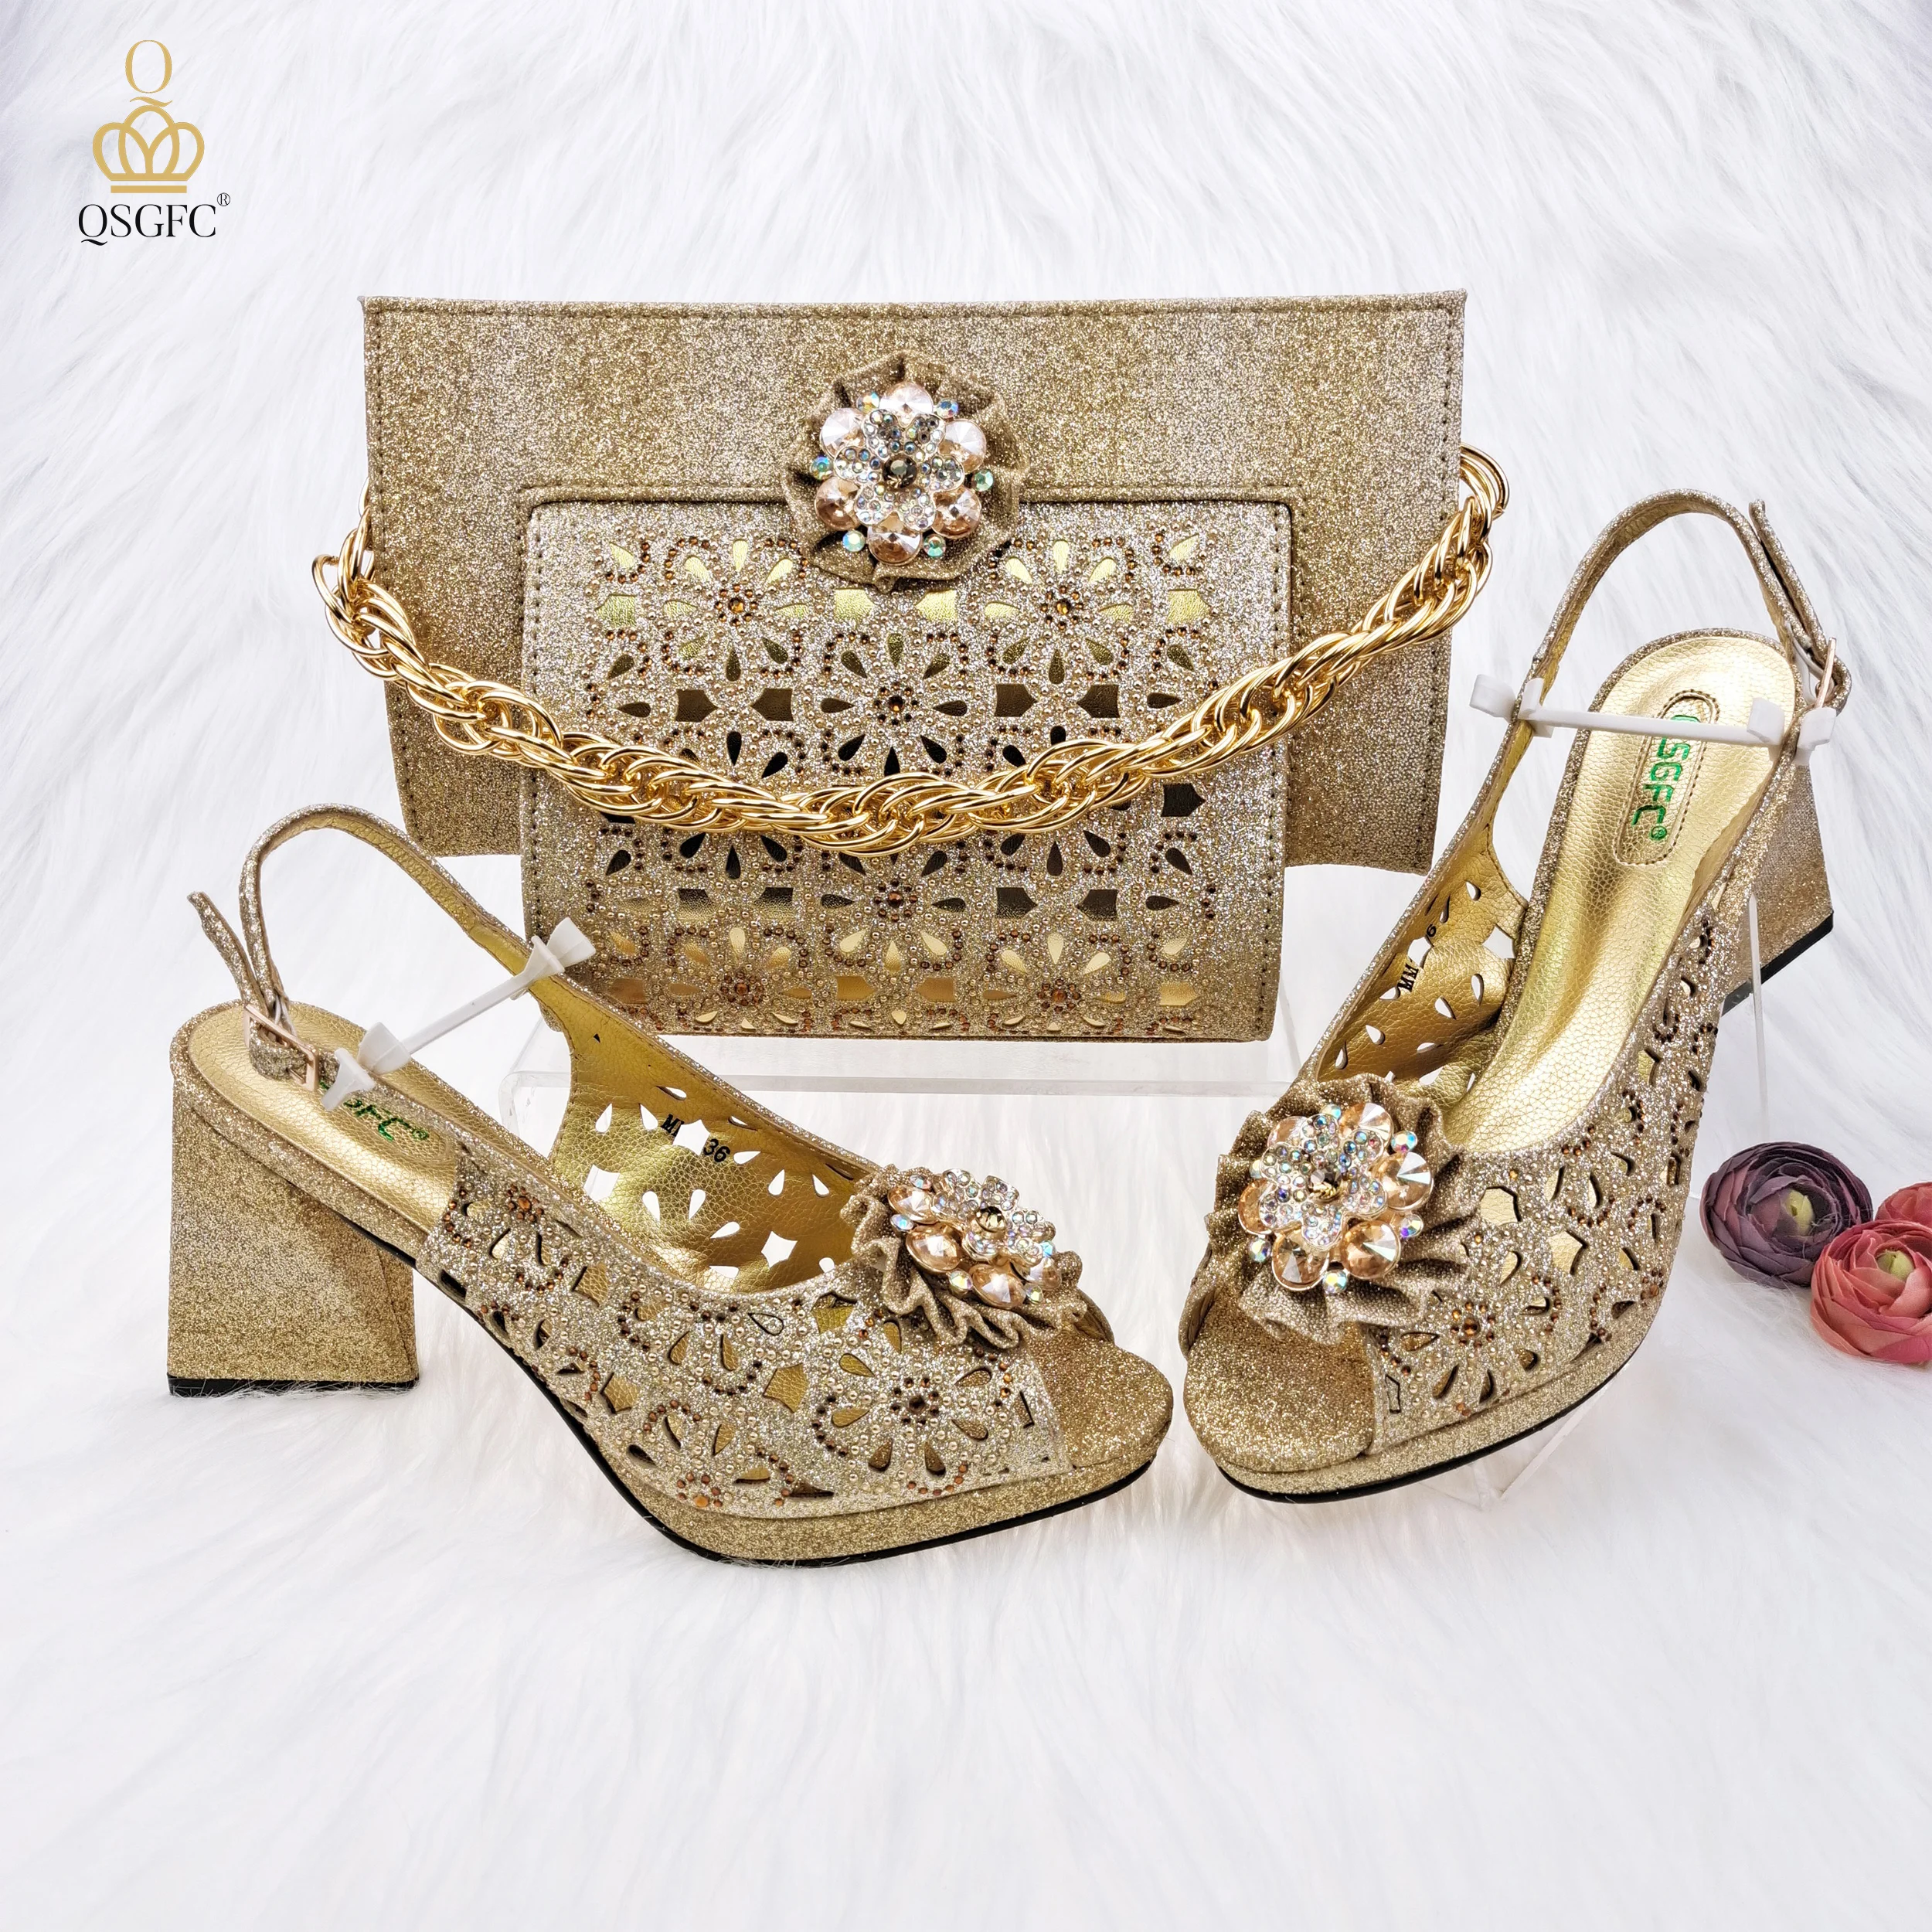 QSGFC-zapatos de tacón alto con recortes para mujer, calzado decorado con diamantes de imitación, diseño de flores, para fiesta, Color dorado, novedad